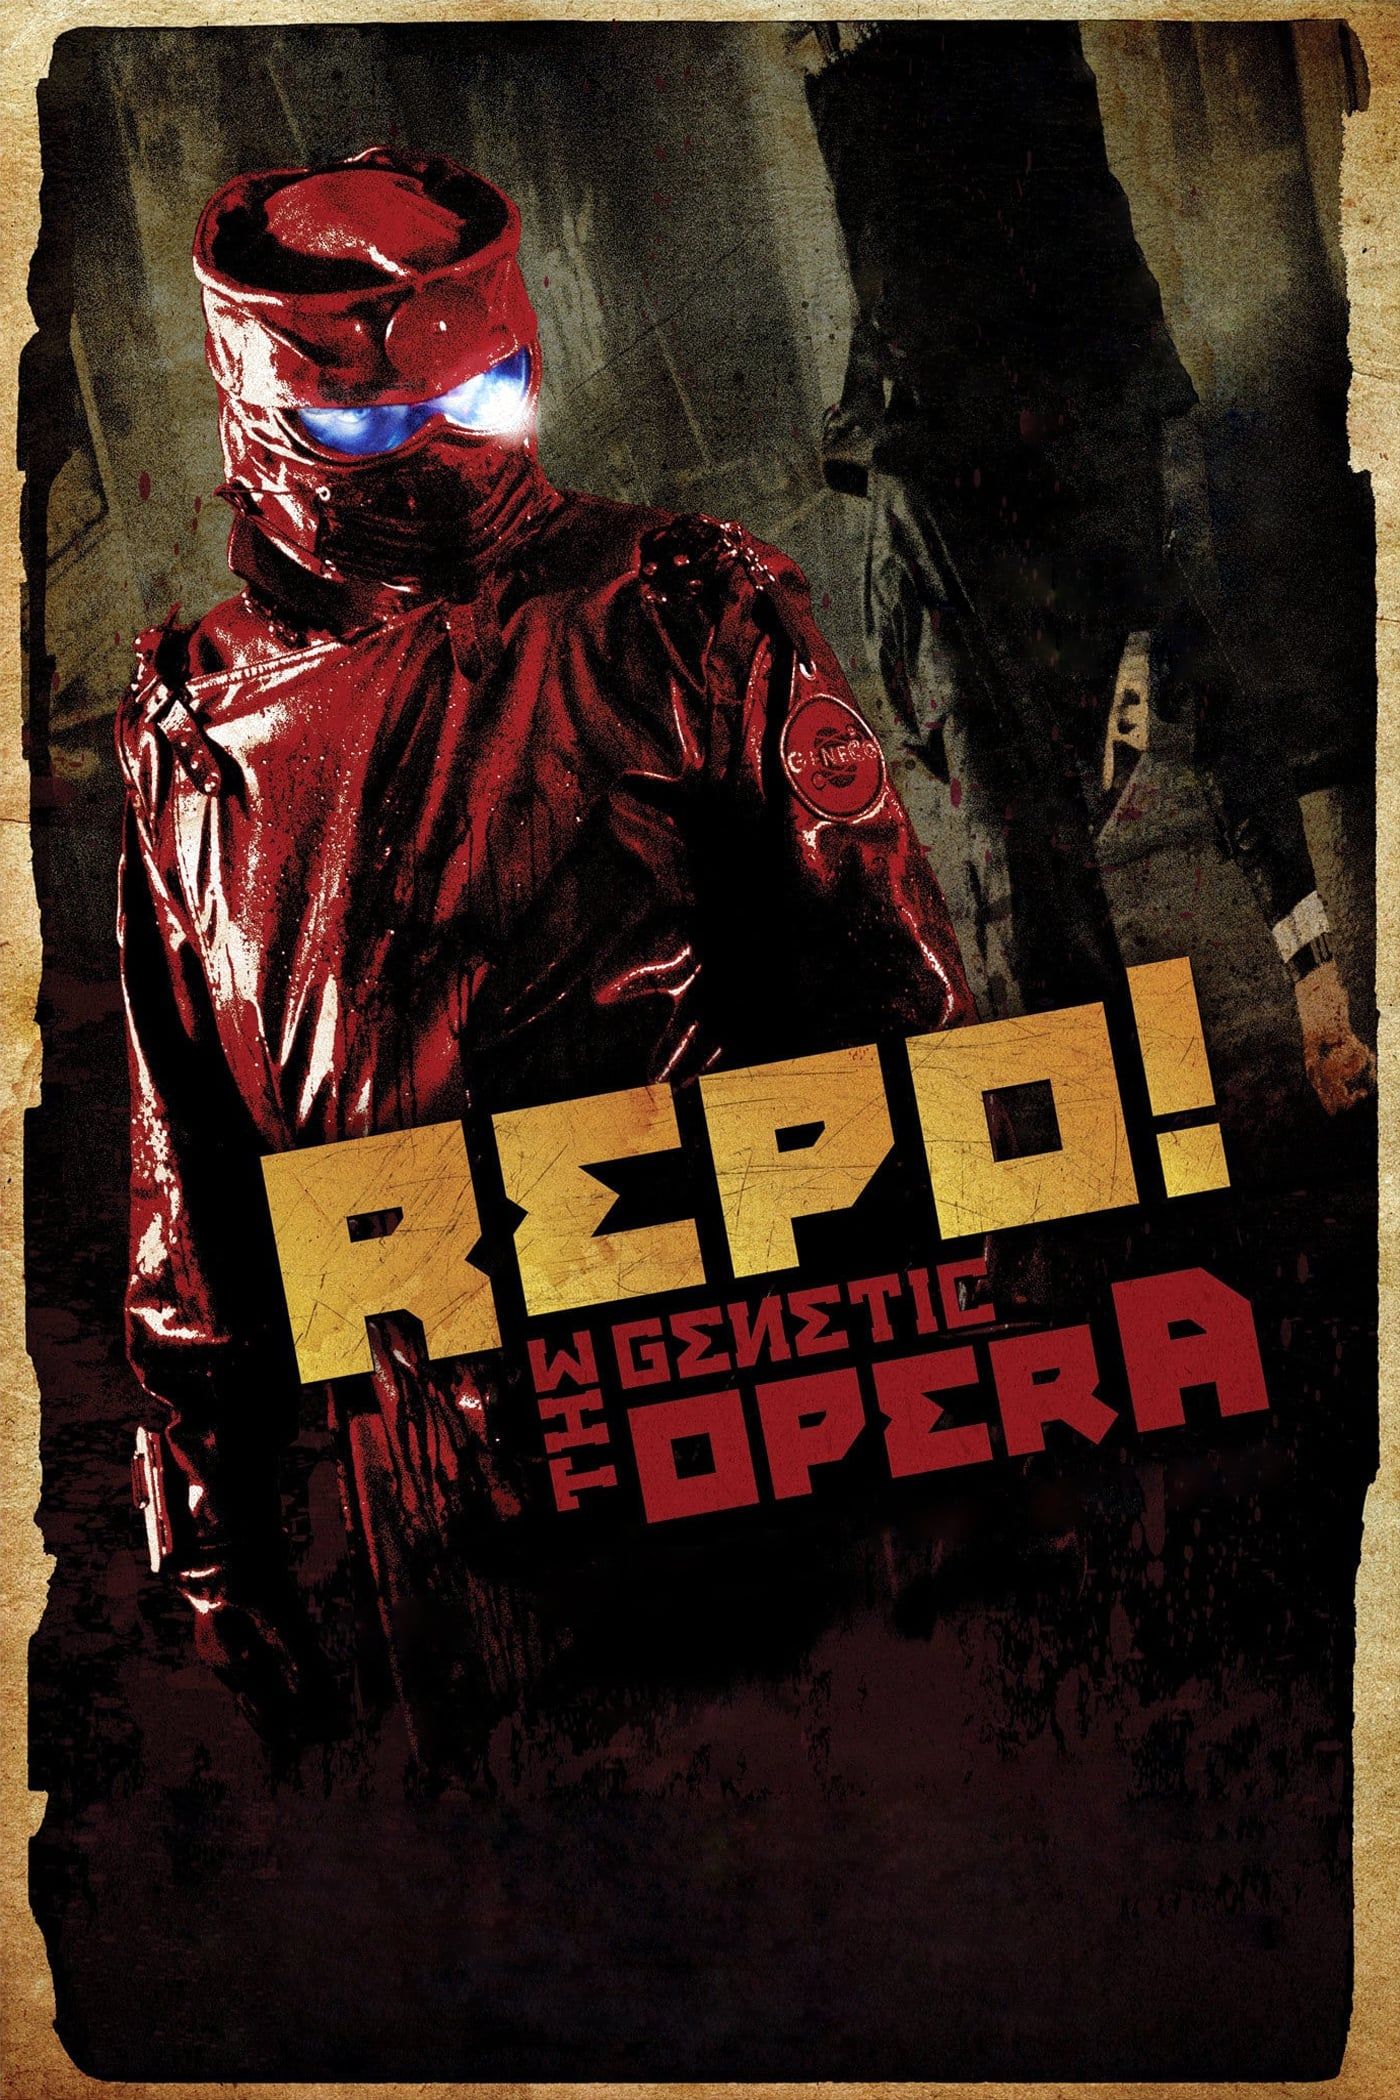 Repo! the Genetic Opera!